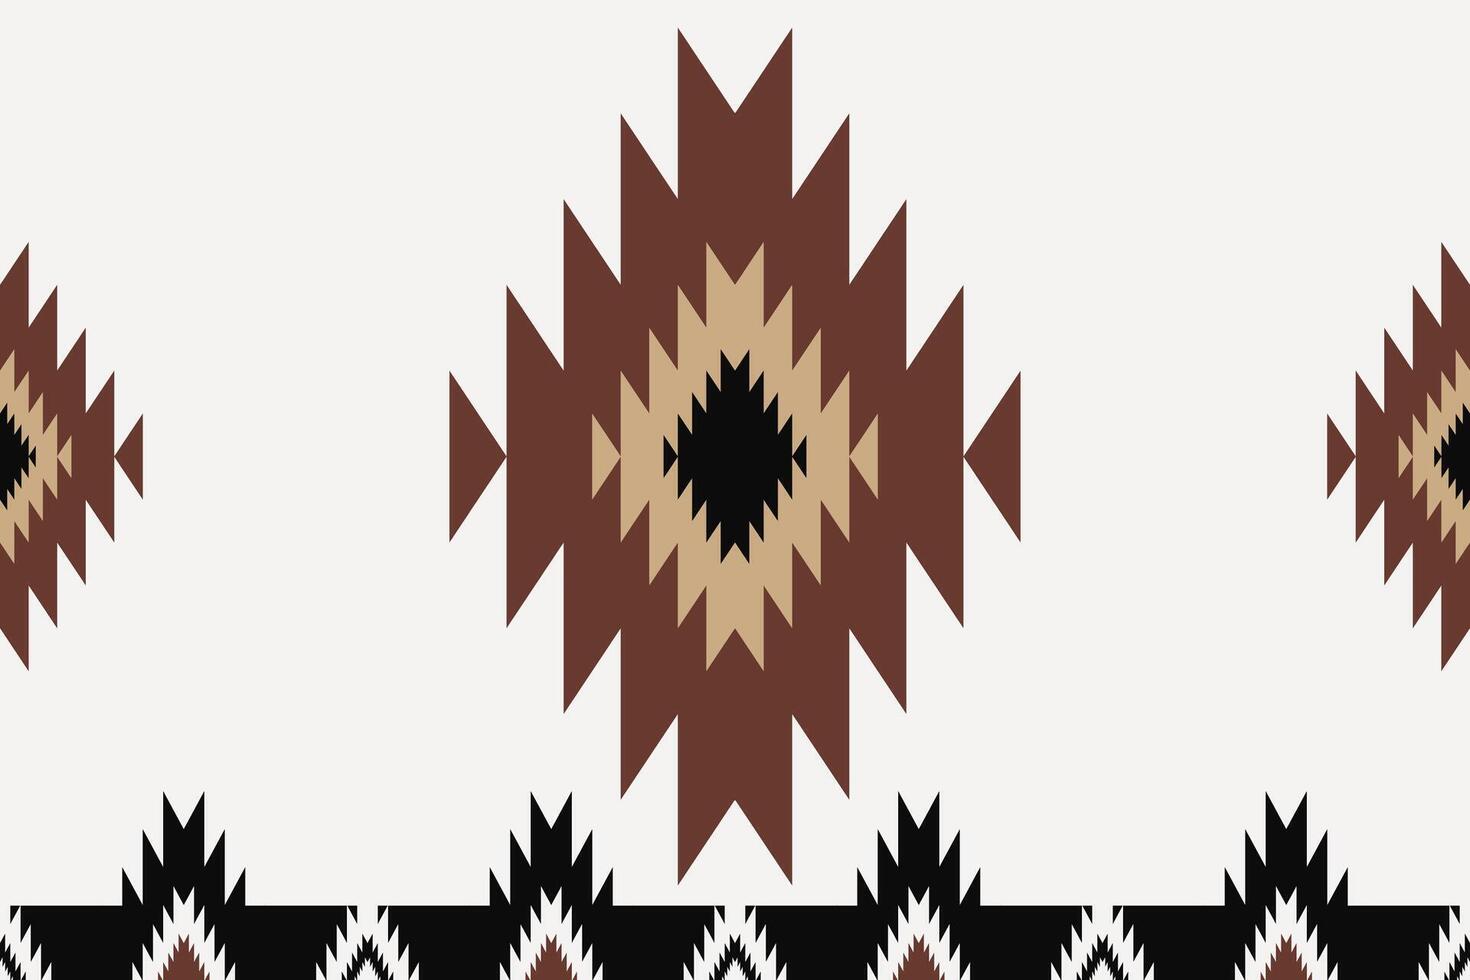 zuidwestelijk meetkundig grens patroon. aztec Navajo meetkundig vorm naadloos patroon rustiek Boheems stijl. zuidwesten meetkundig patroon gebruik voor textiel grens, huis decoratie elementen, enz. vector